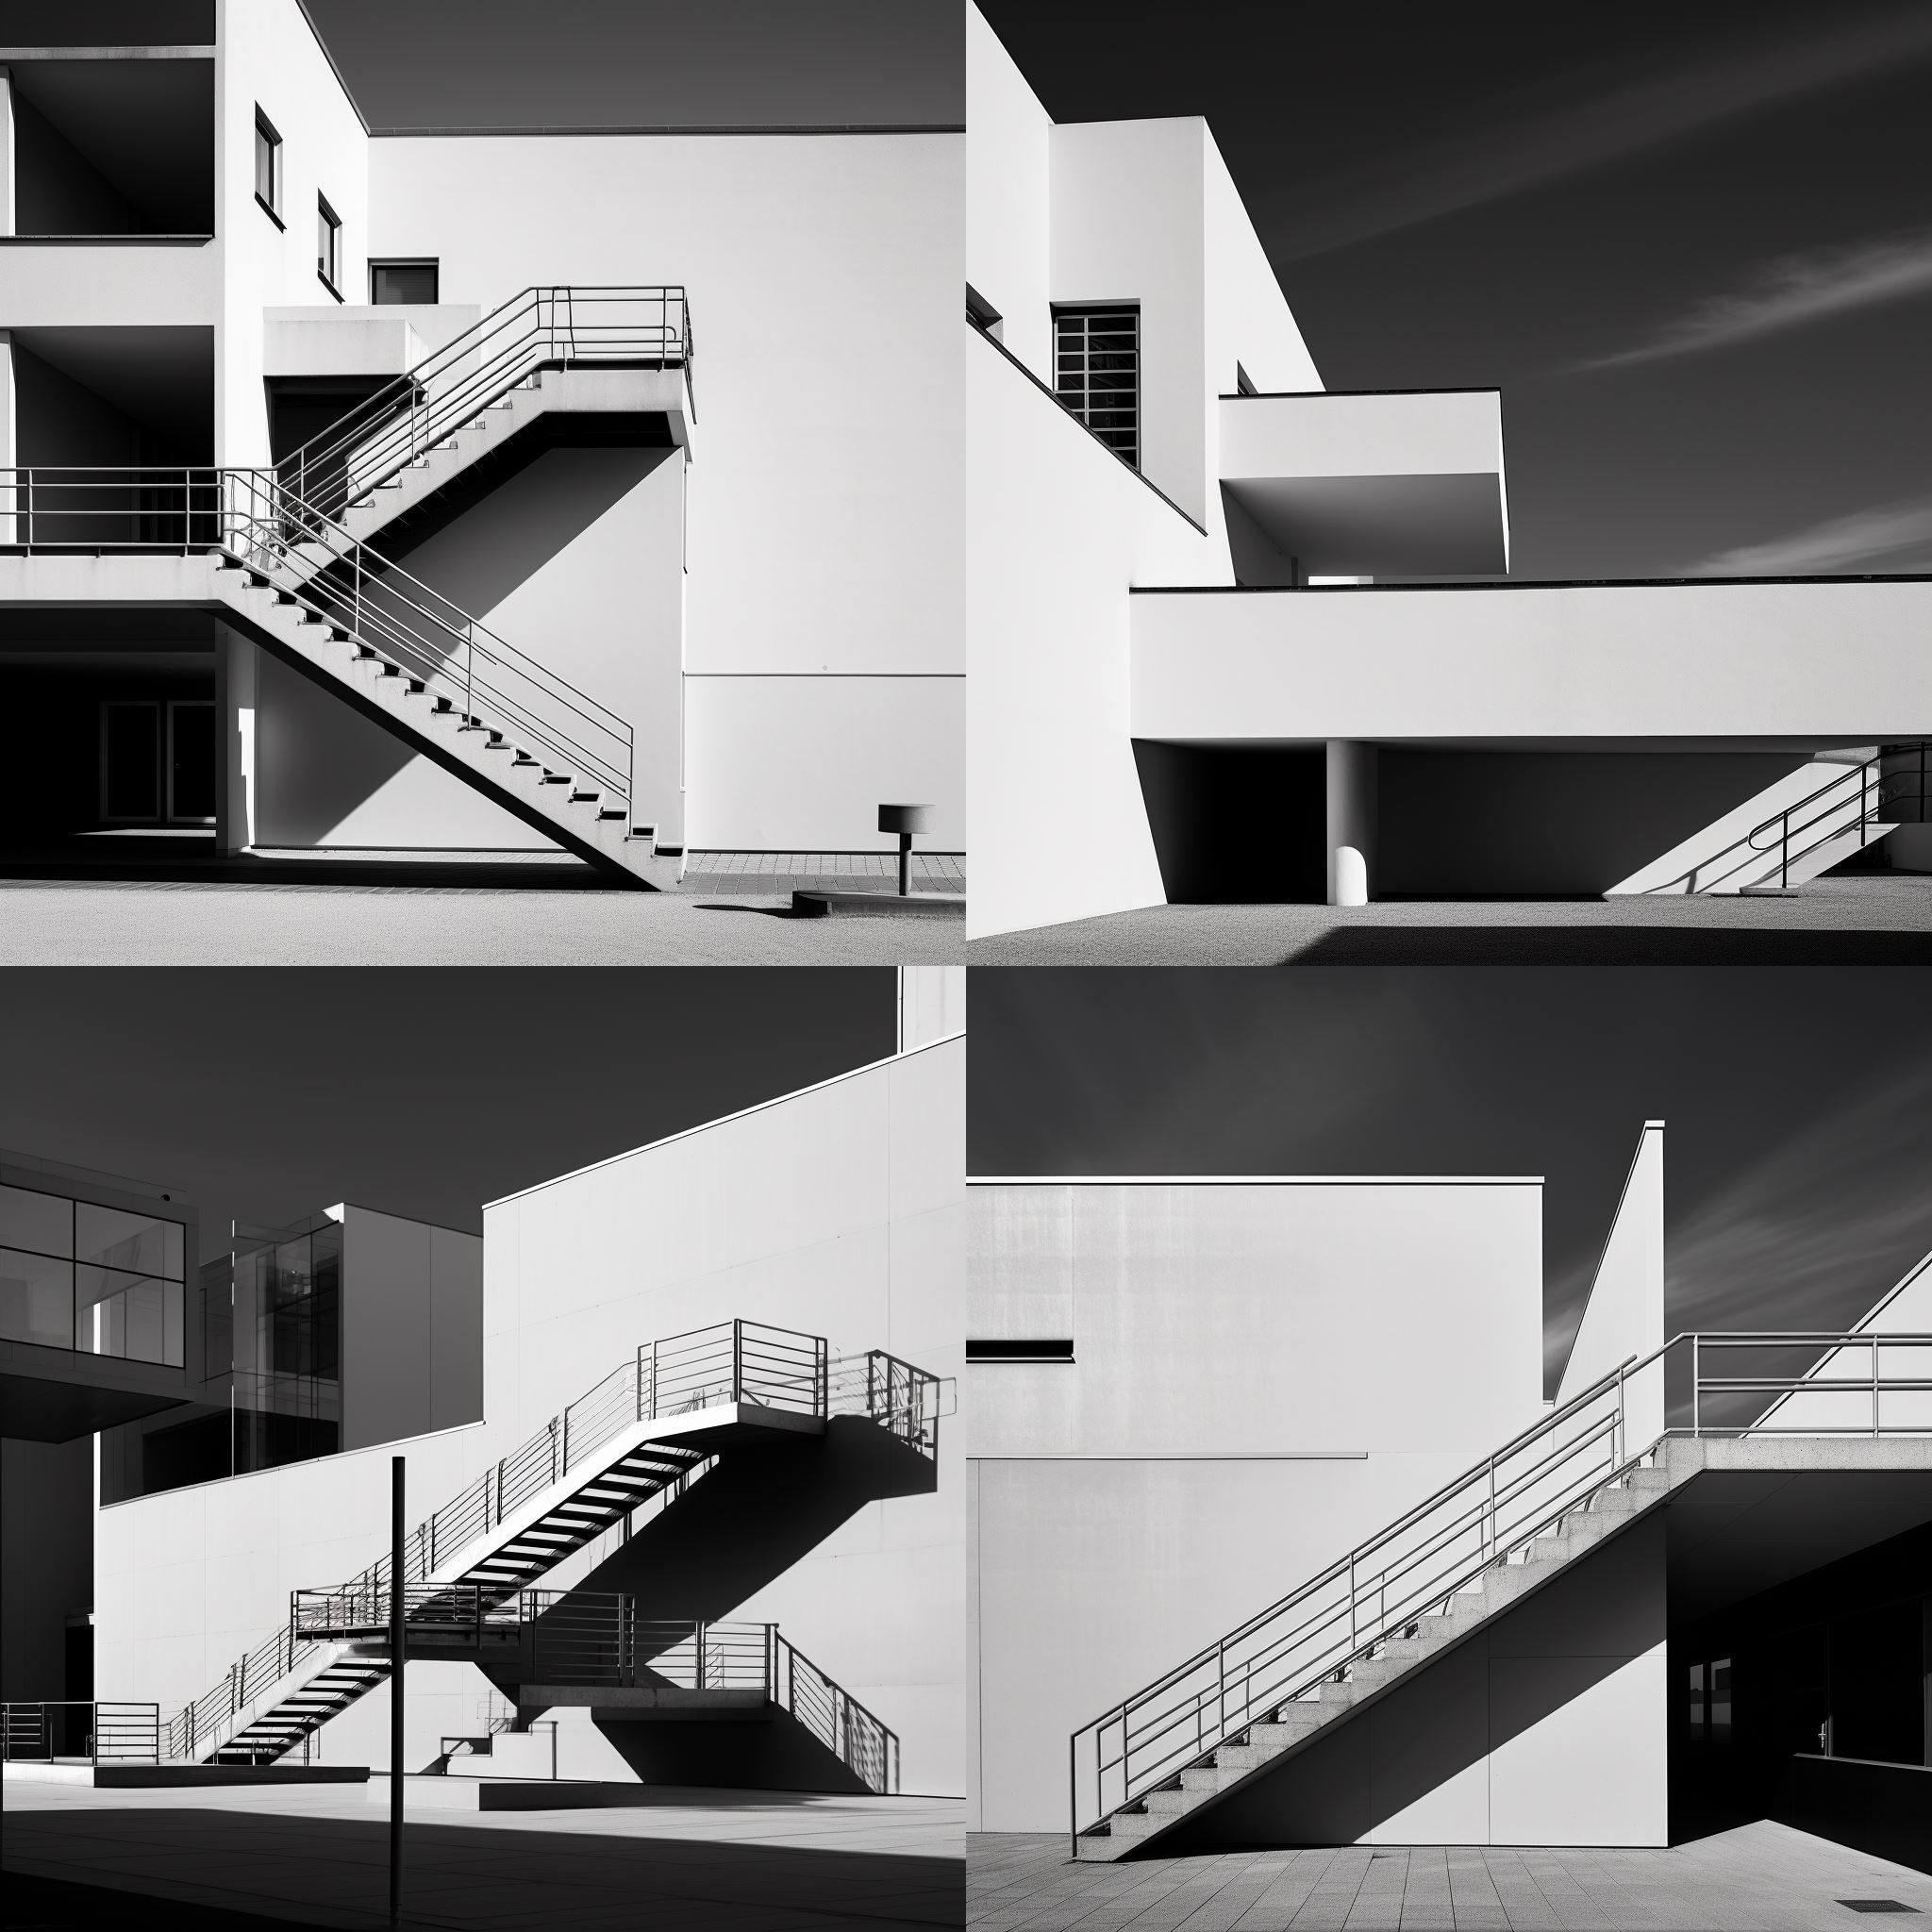 Conception du Bauhaus allemand